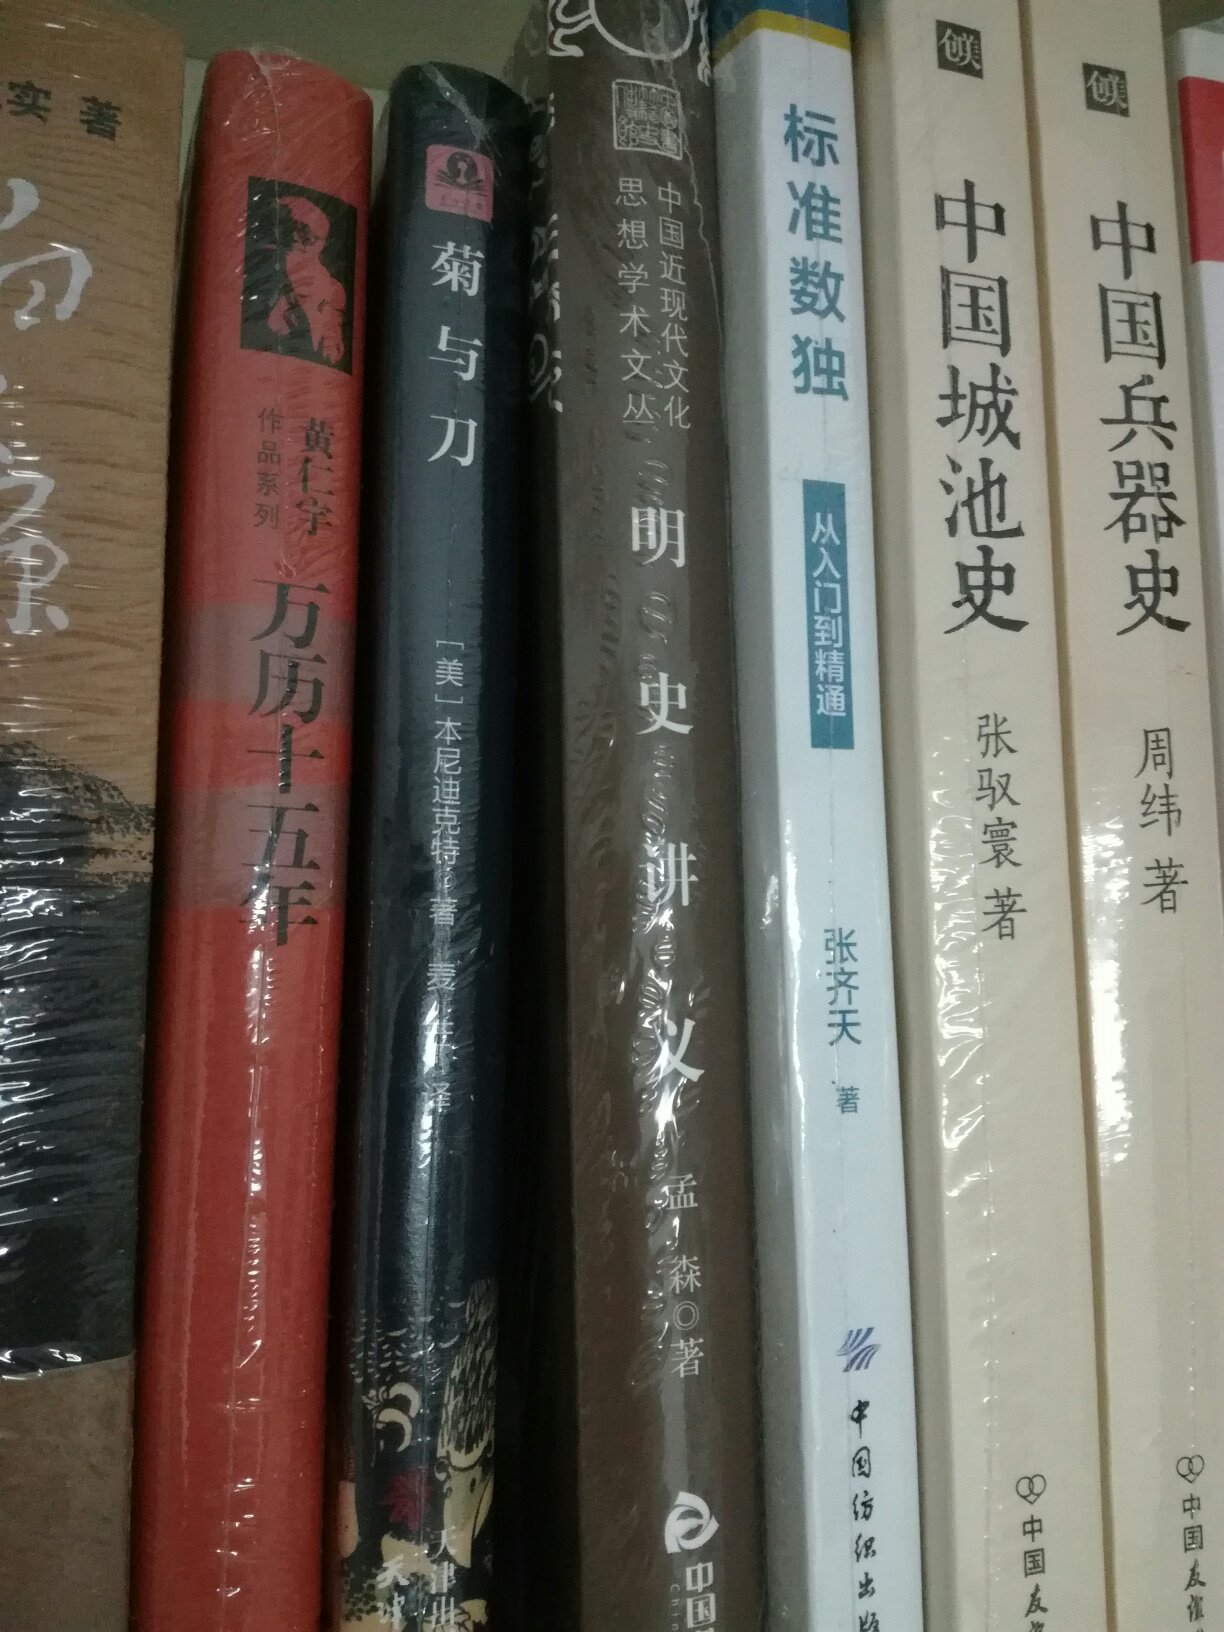 活动屯了很多书，中国城池史说实话很一般，给个中评